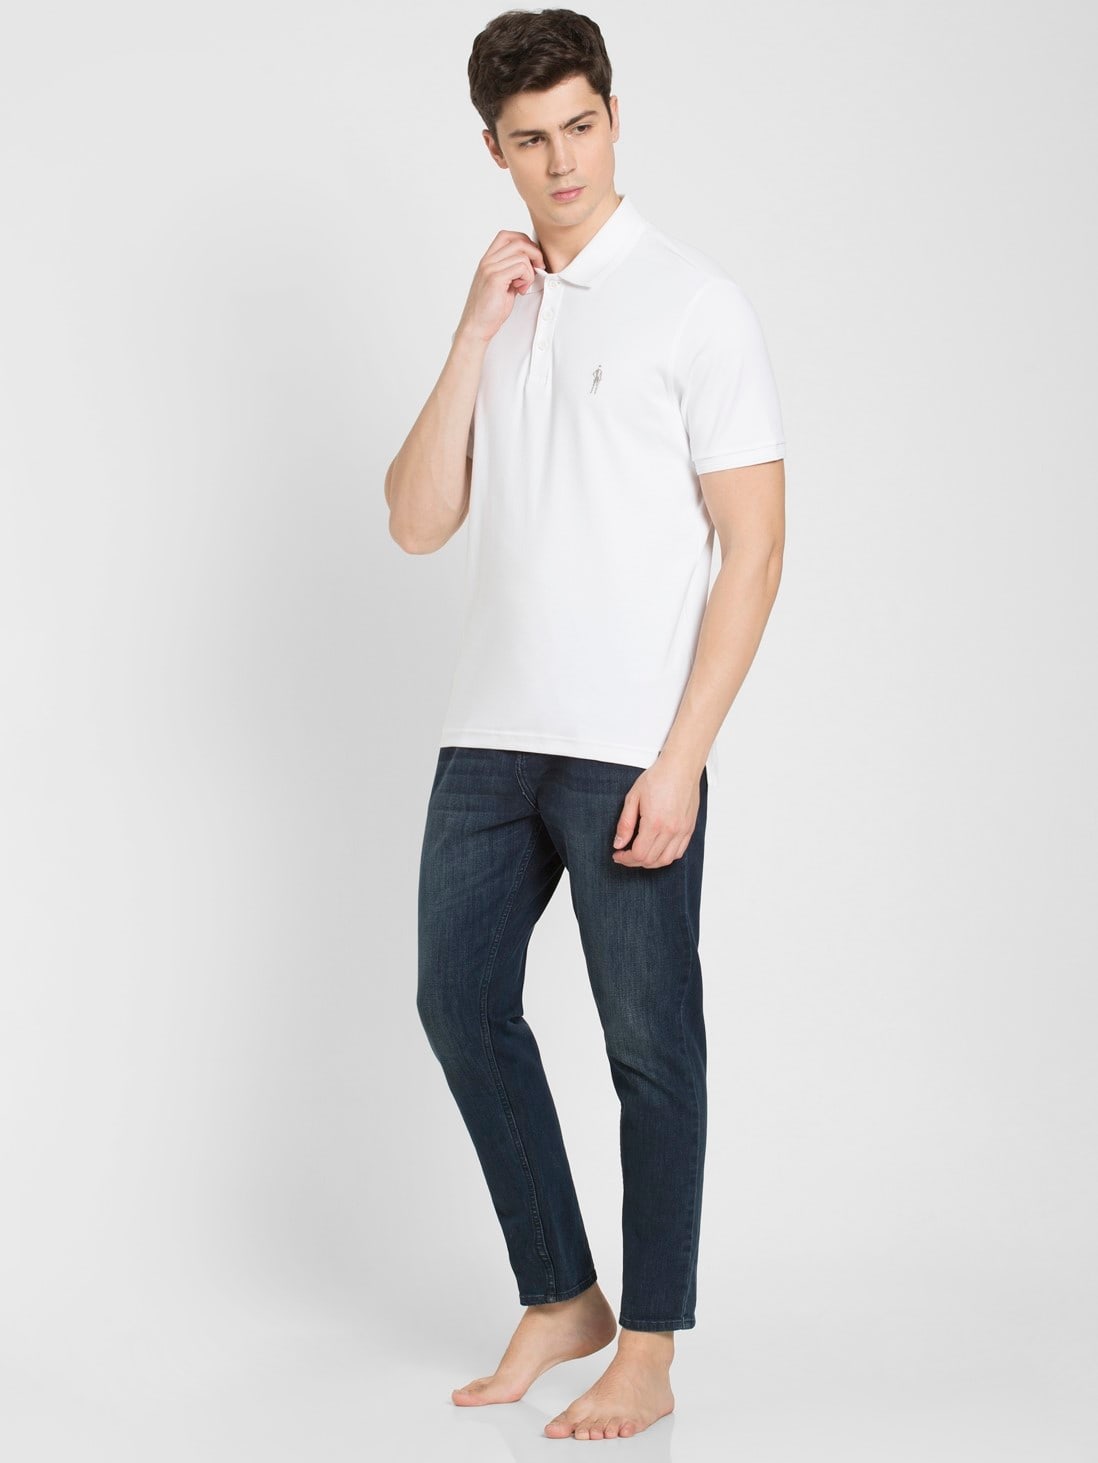 White Regular Fit Half Sleeve Polo T-Shirt for Men 3912 | Jockey India